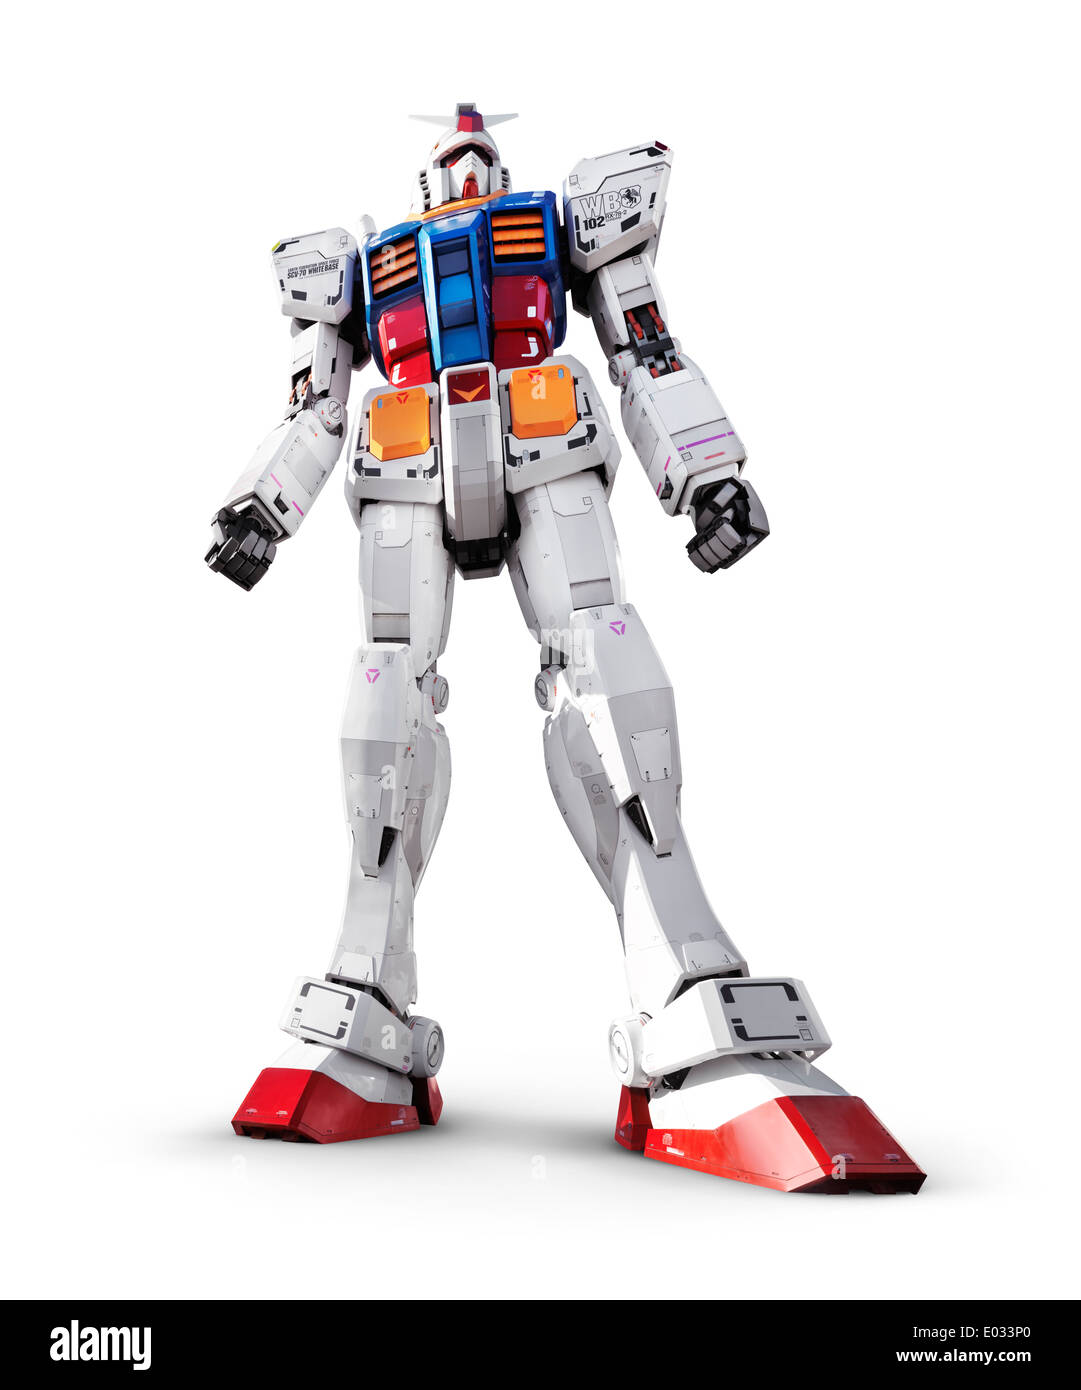 Lizenz erhältlich unter MaximImages.com - Gundam RX-78-2 Riesenroboter, mobile Anzug Statue isoliert auf weißem Hintergrund mit Clipping-Pfad Stockfoto